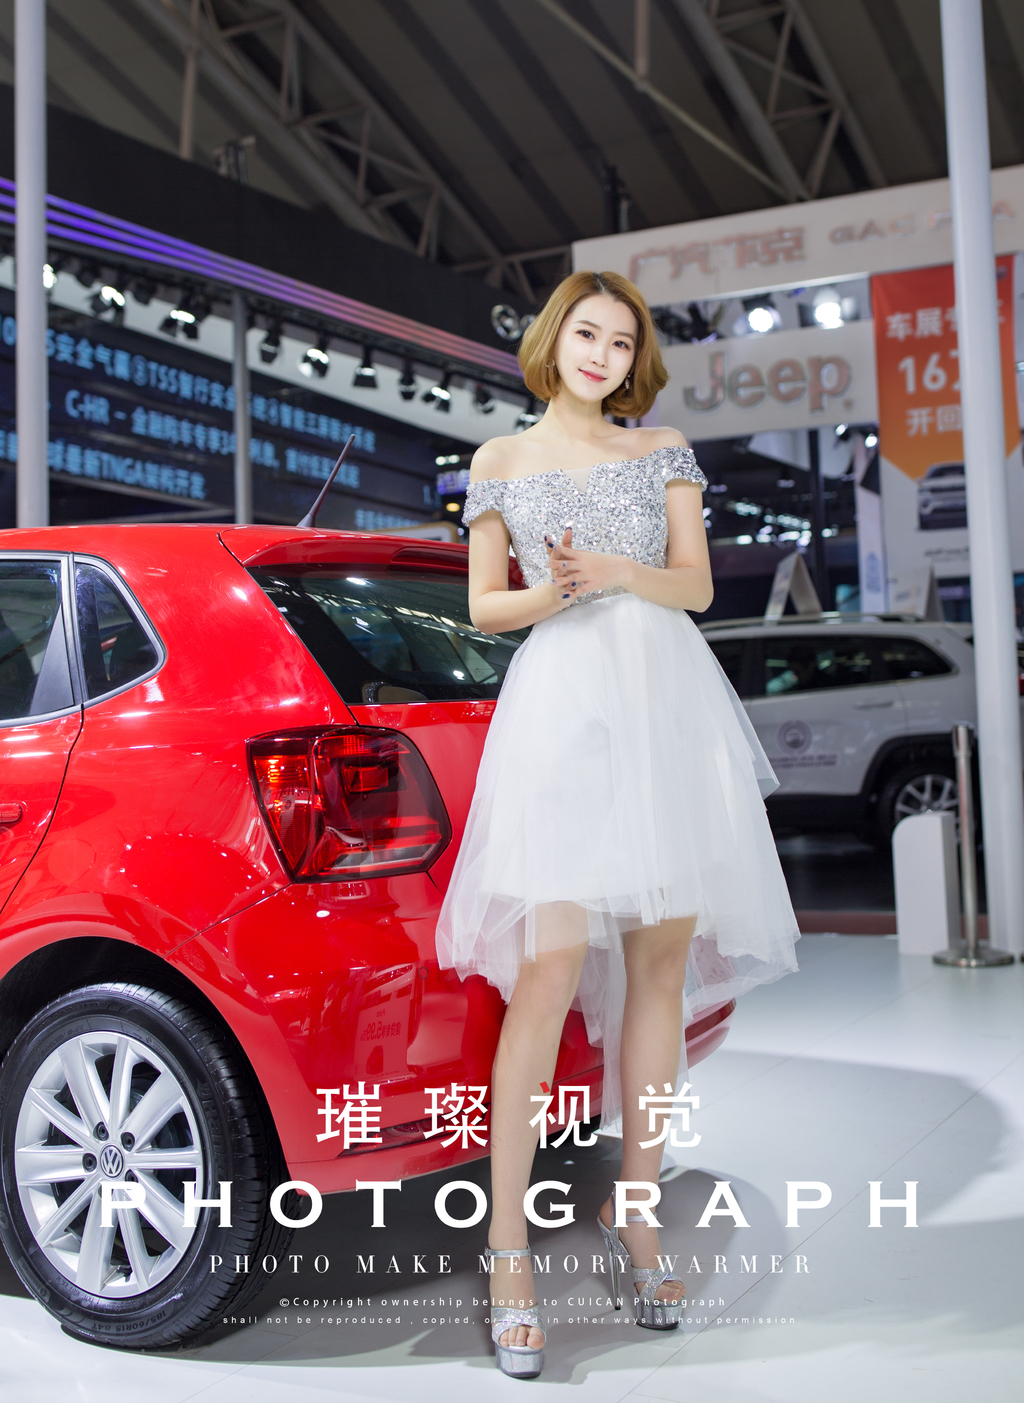 哈尔滨美女车模s型身材前凸后翘迷人笑容车展写真  第4张